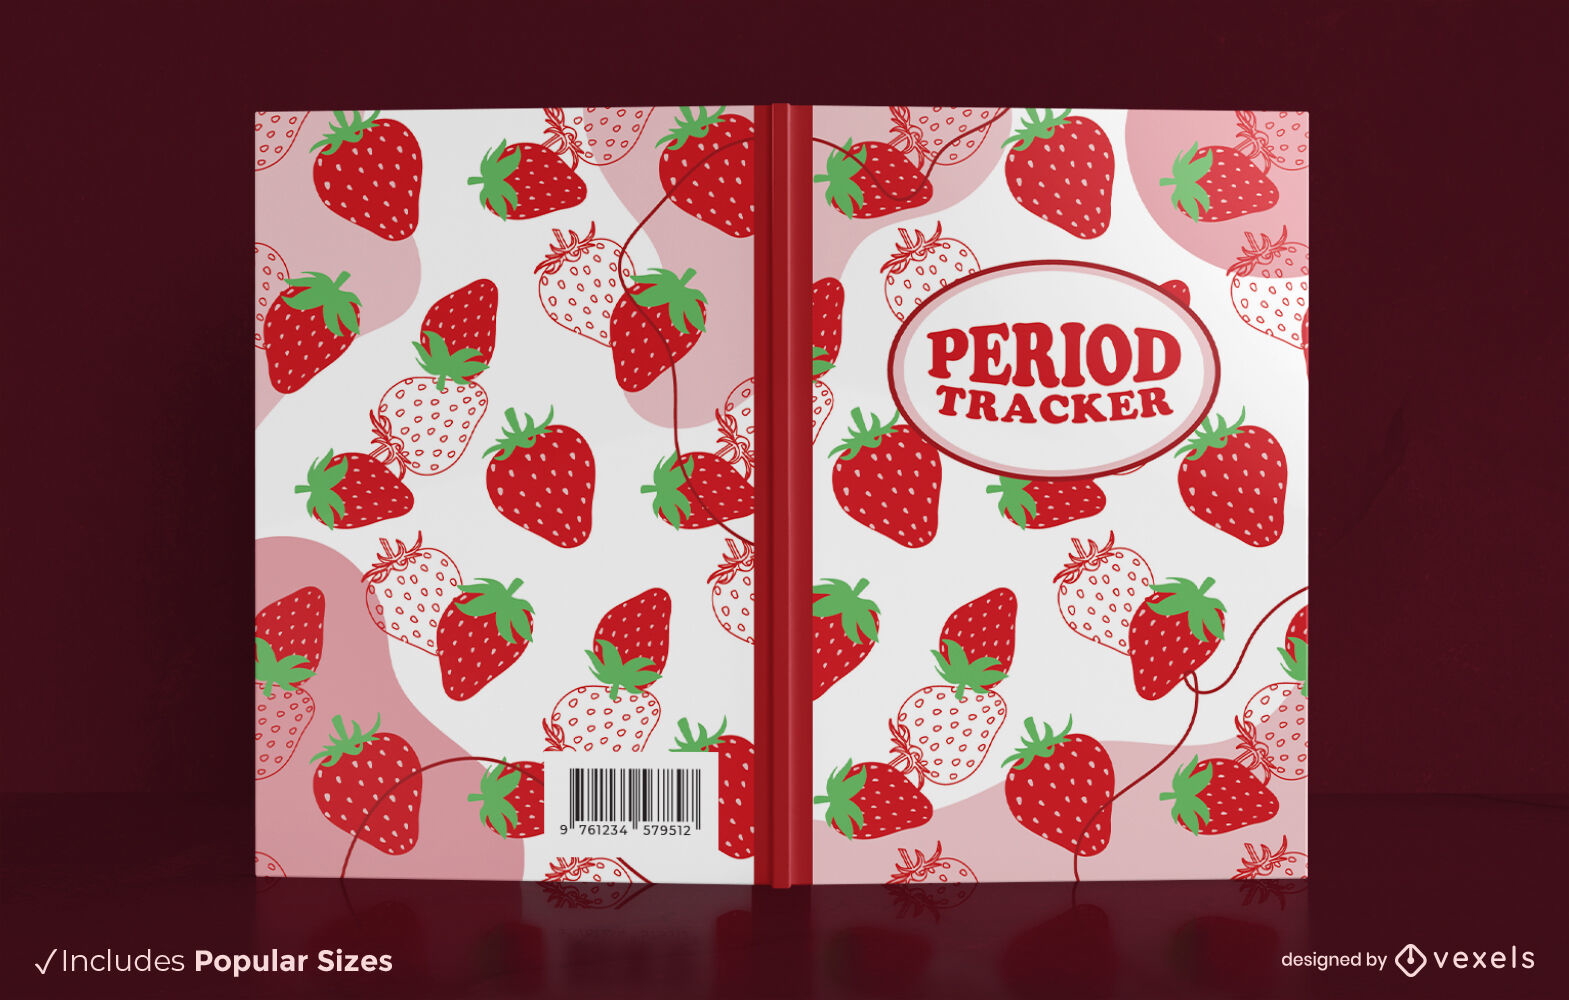 Period tracker strawberry book cover design